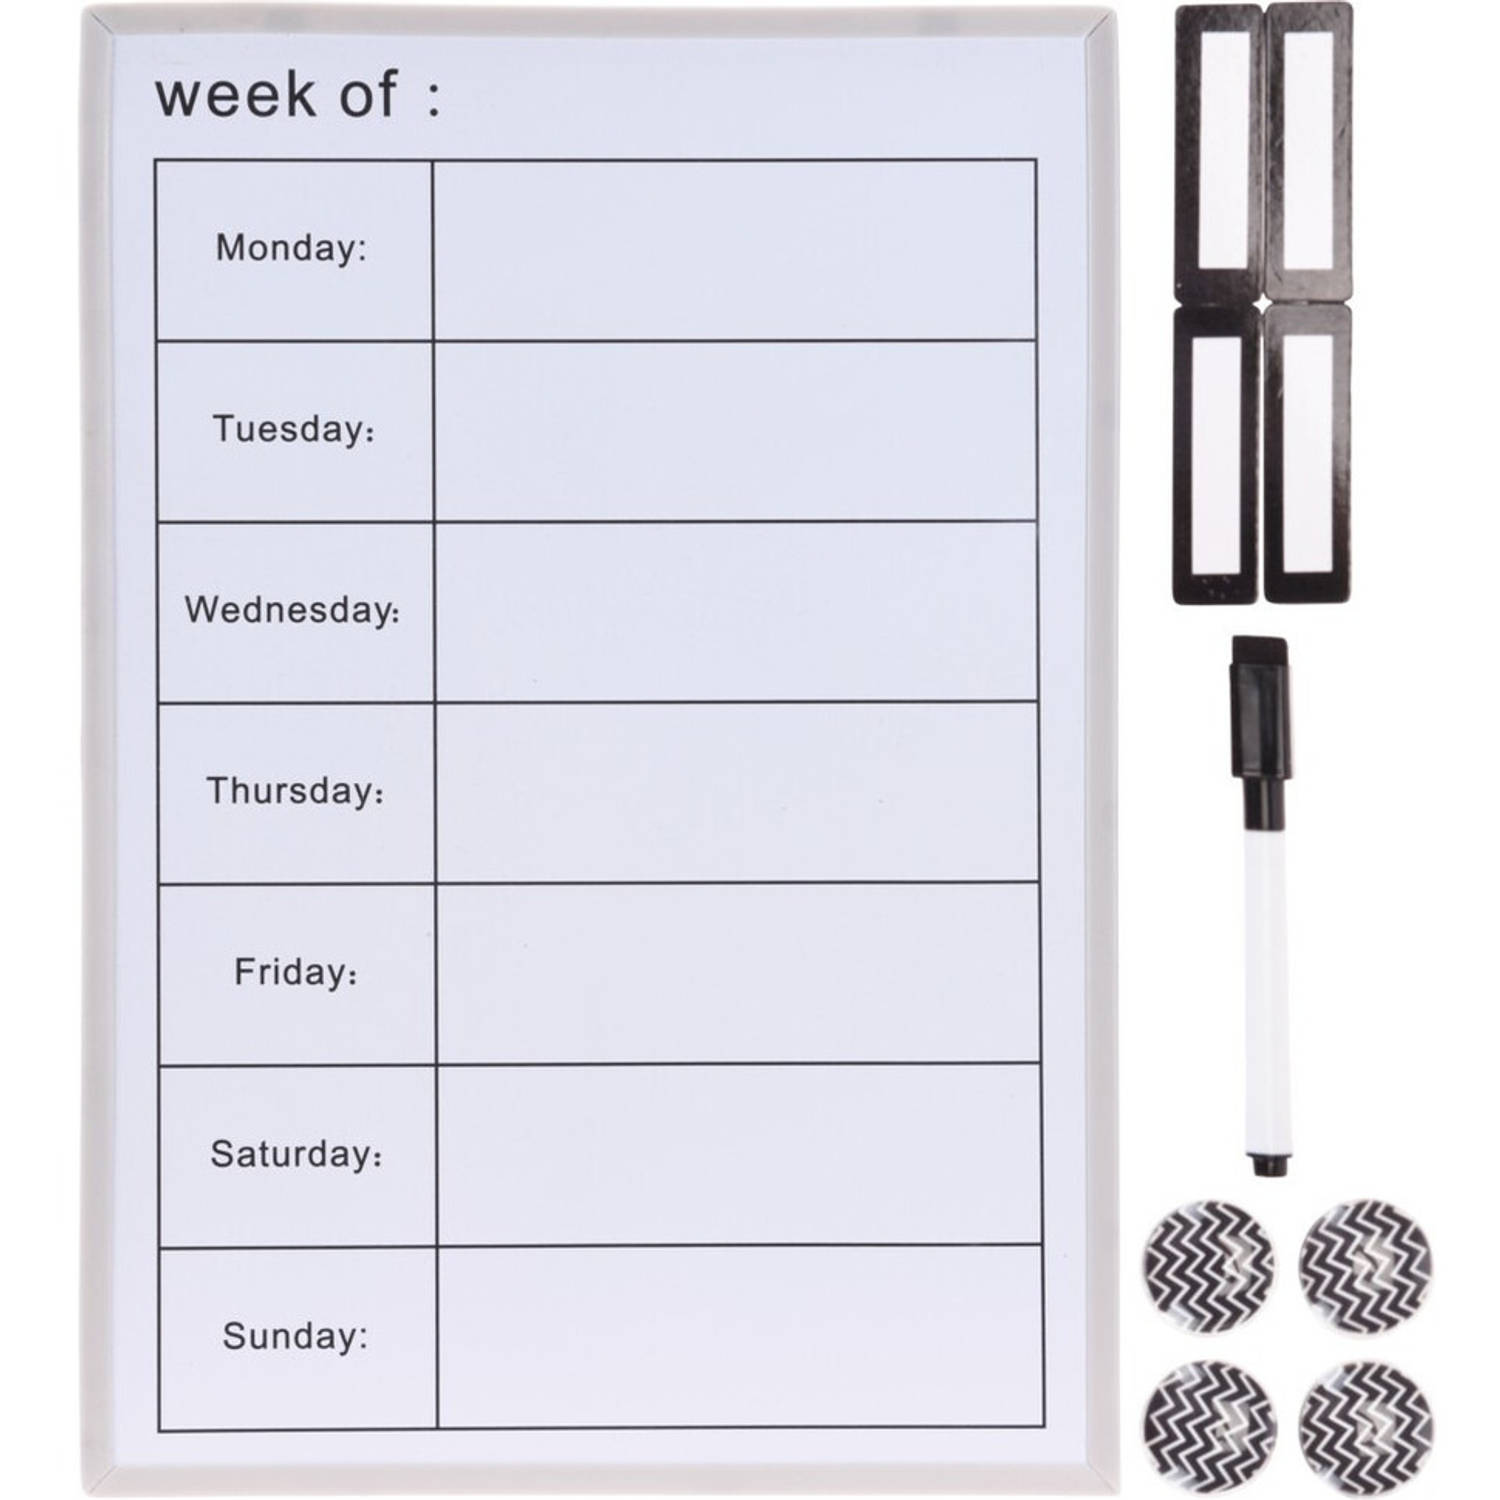 Magnetisch whiteboard/weekplanner met stift en magneetjes 40 x 28 x 1 cm. - Memobord - Planbord